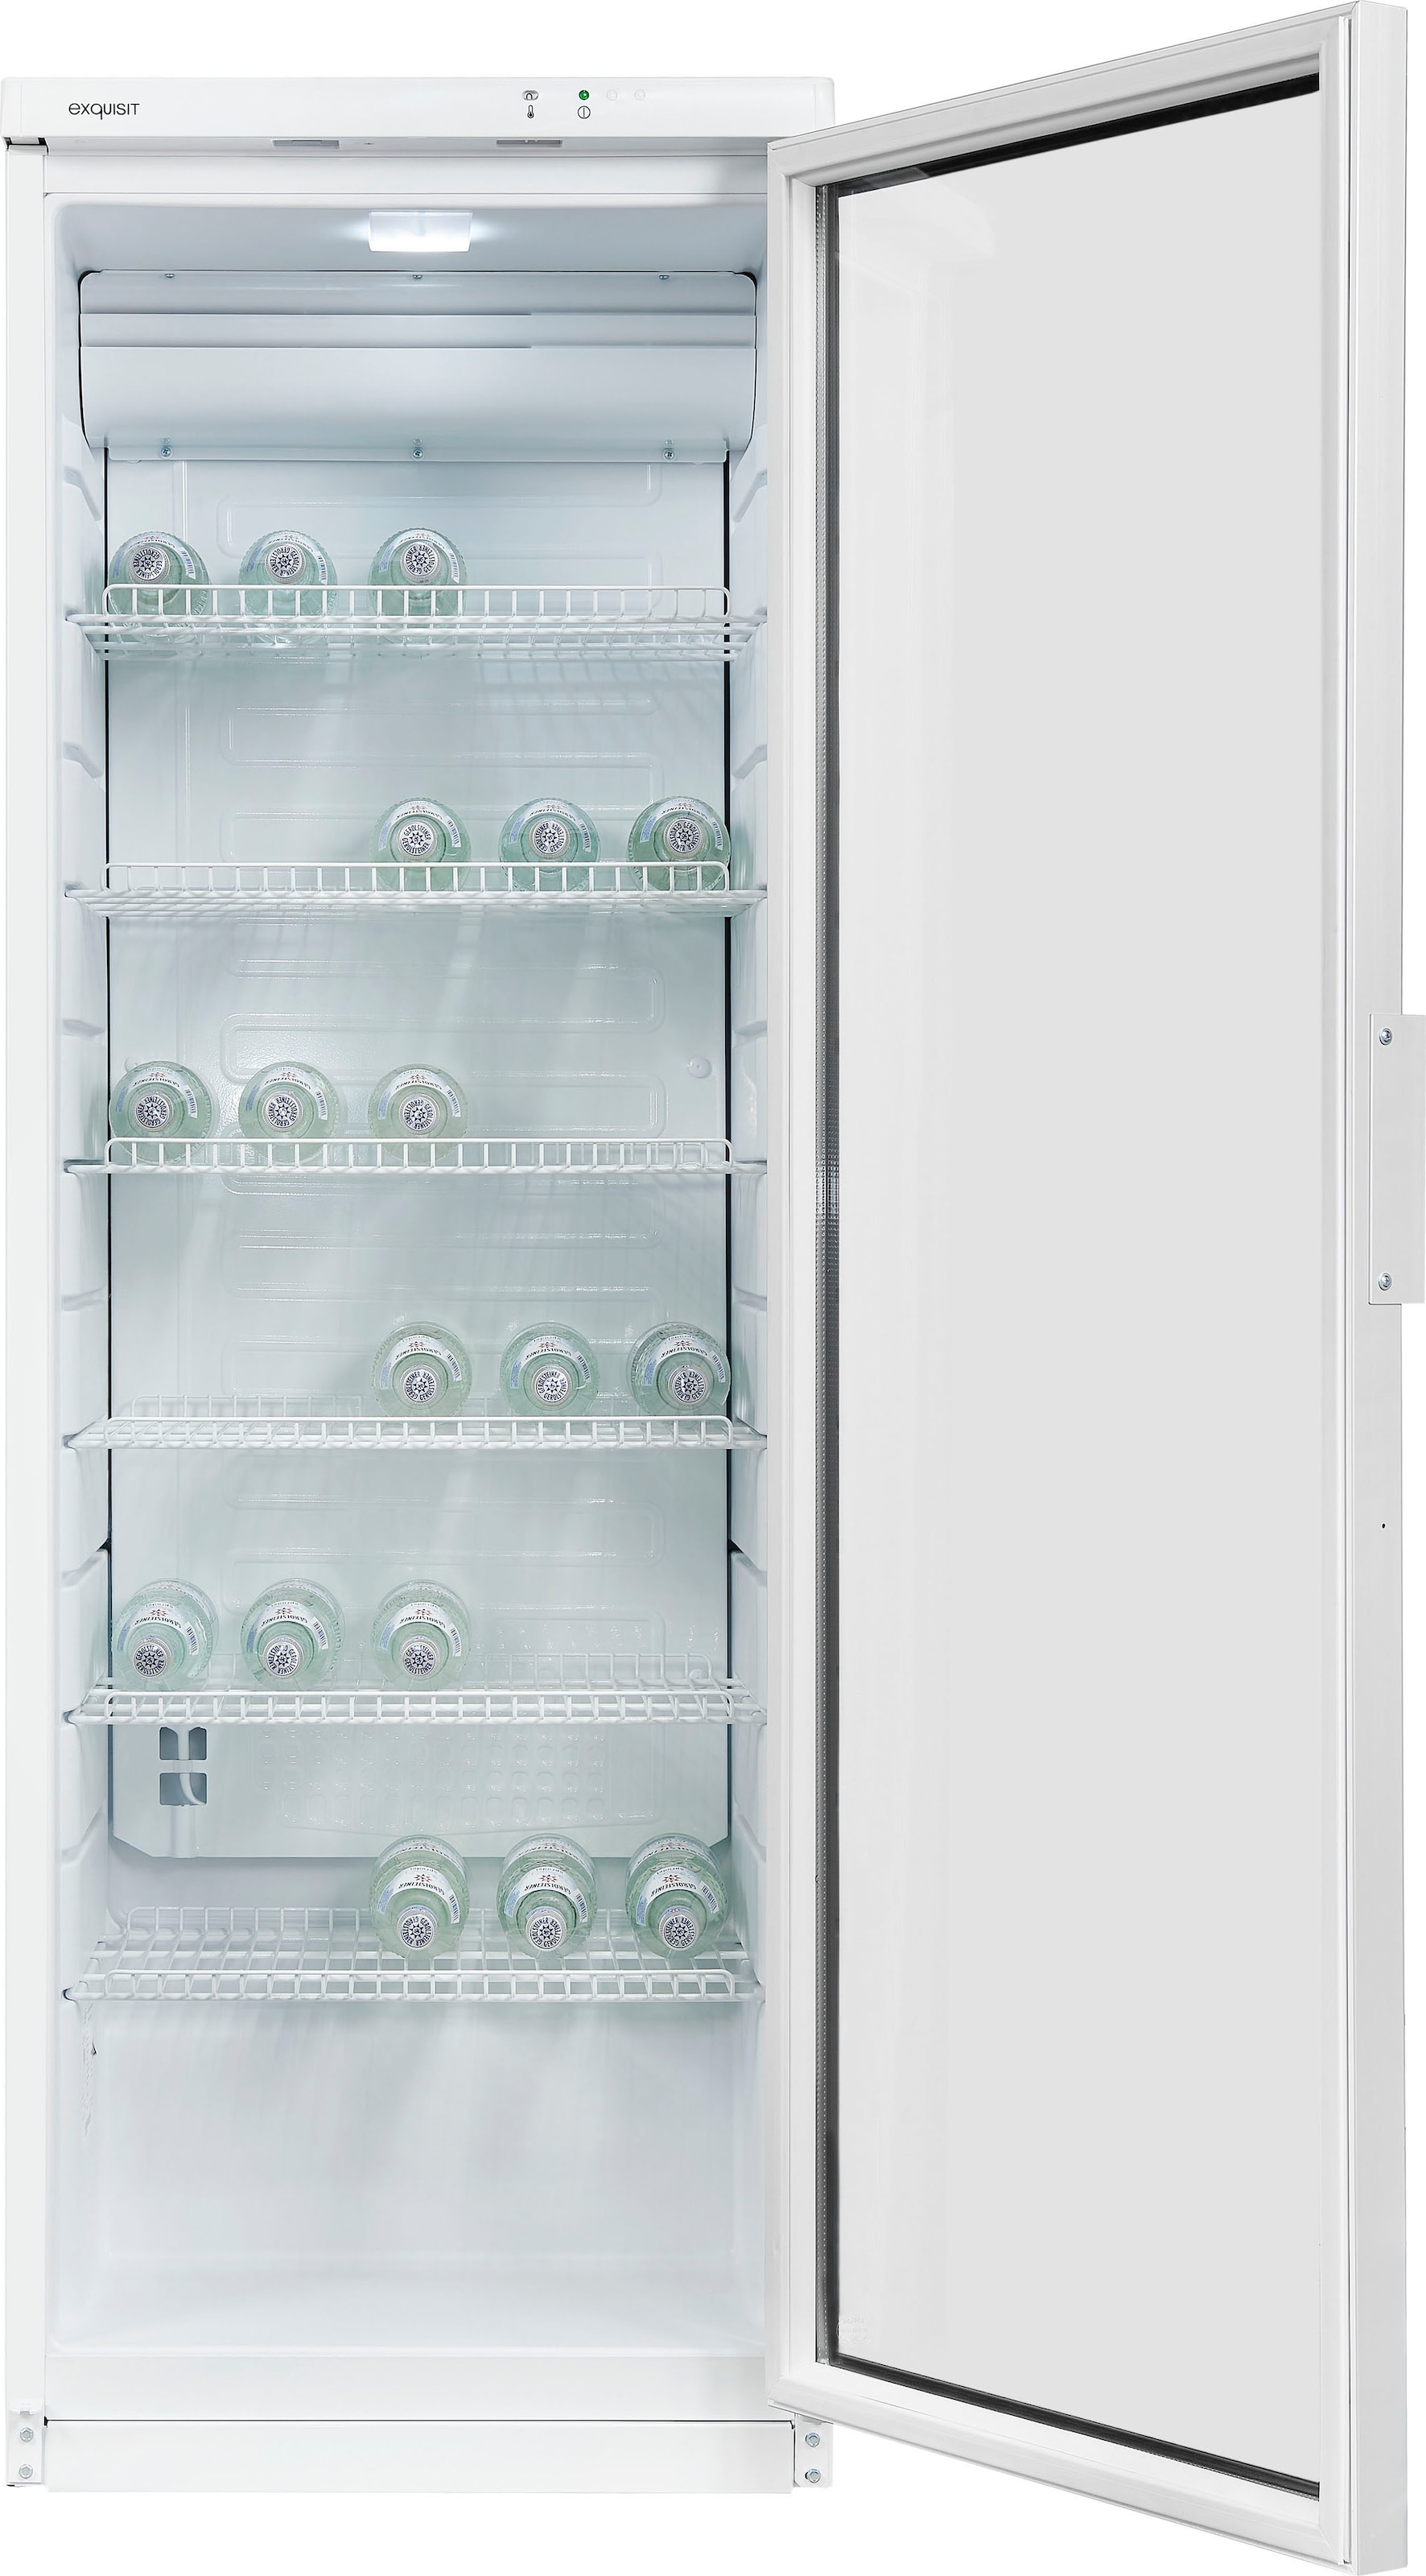 exquisit Getränkekühlschrank »GKS350-1-GT-280D«, GKS350-1-GT-280D weiss, 173 cm hoch, 60 cm breit, 320 L Volumen, Getränkekühlschrank mit Glastür, LED